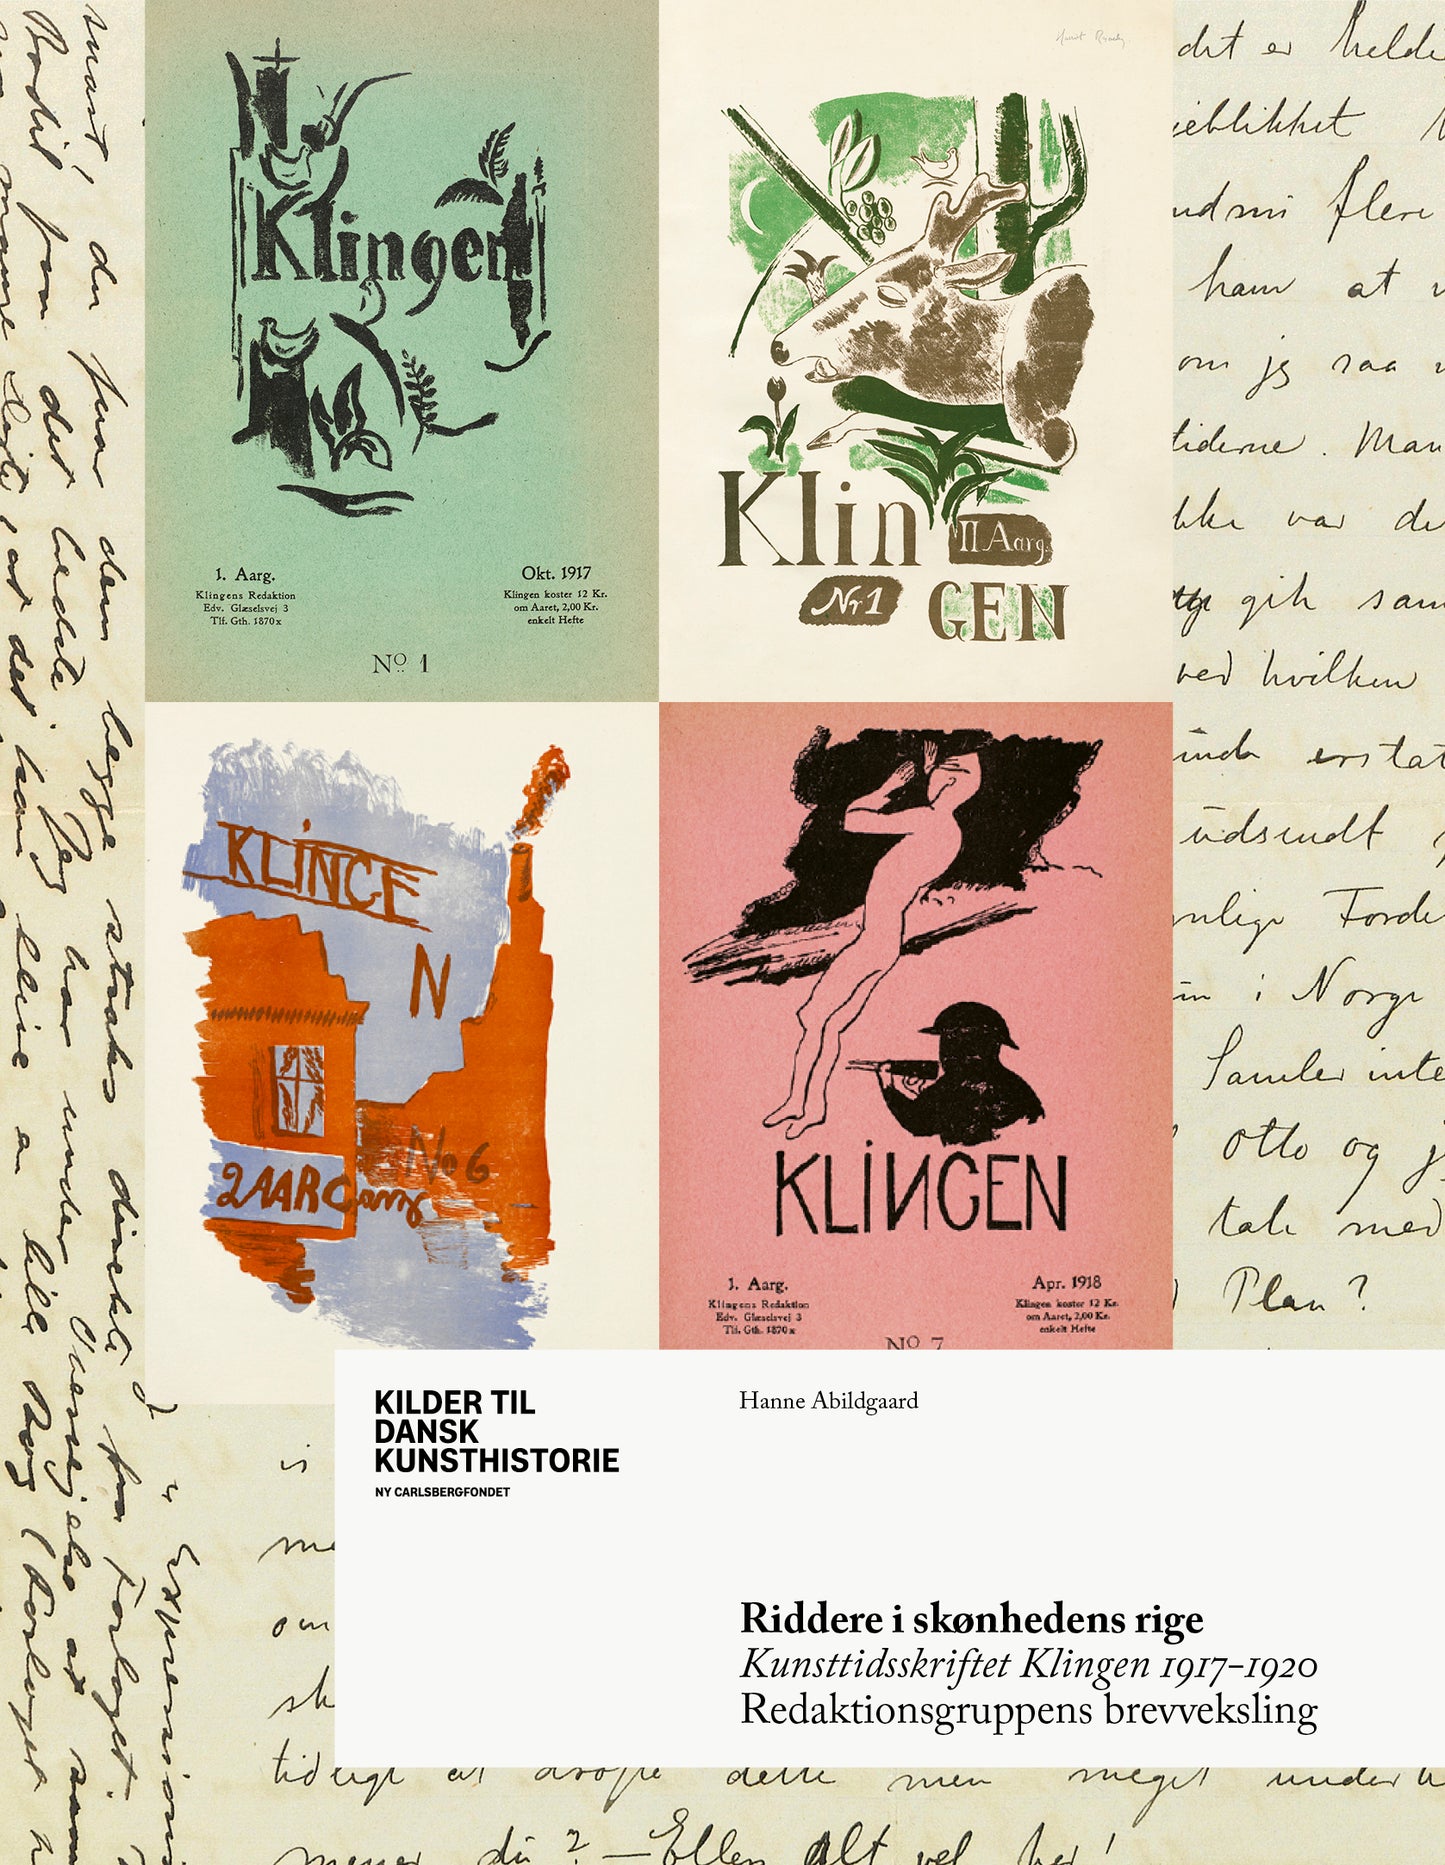 Riddere i skønhedens rige – Kunsttidsskriftet Klingen 1917-1920